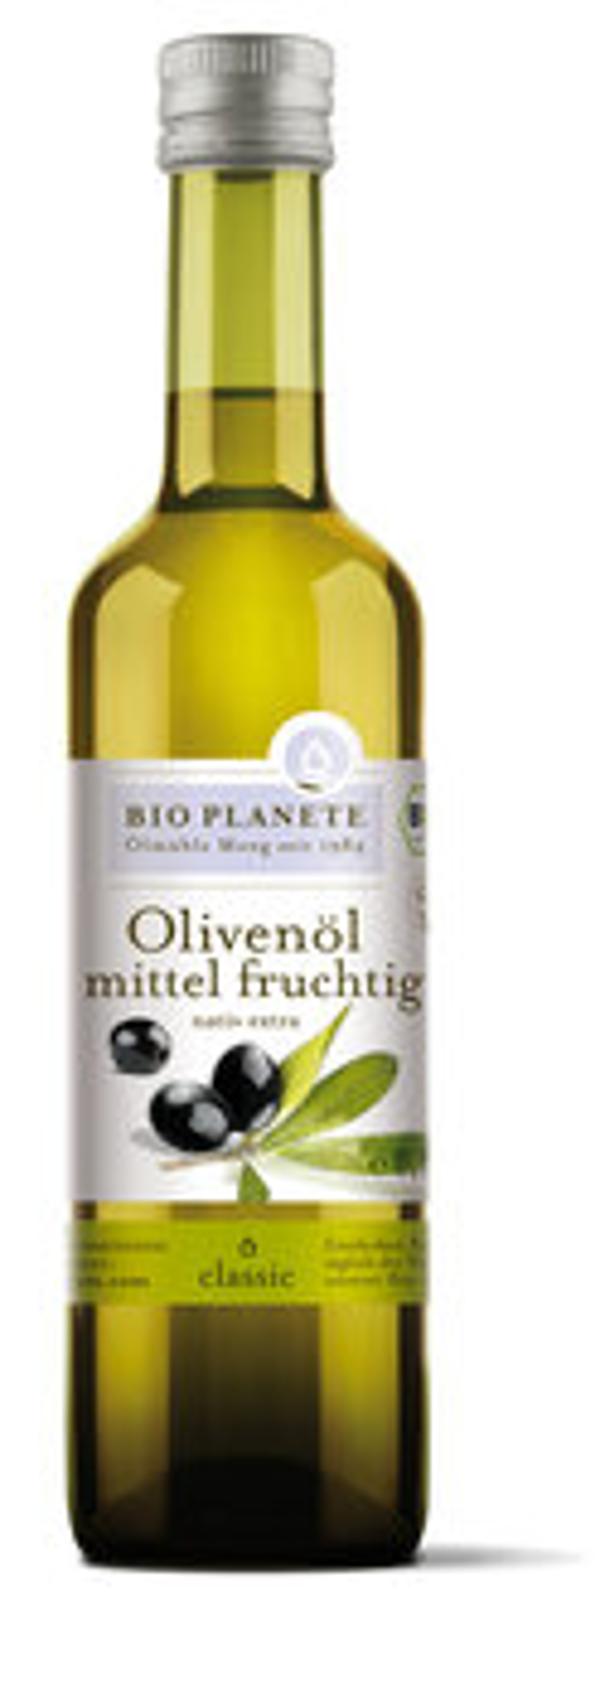 Produktfoto zu Bio Planète Olivenöl mittel fruchtig 500ml